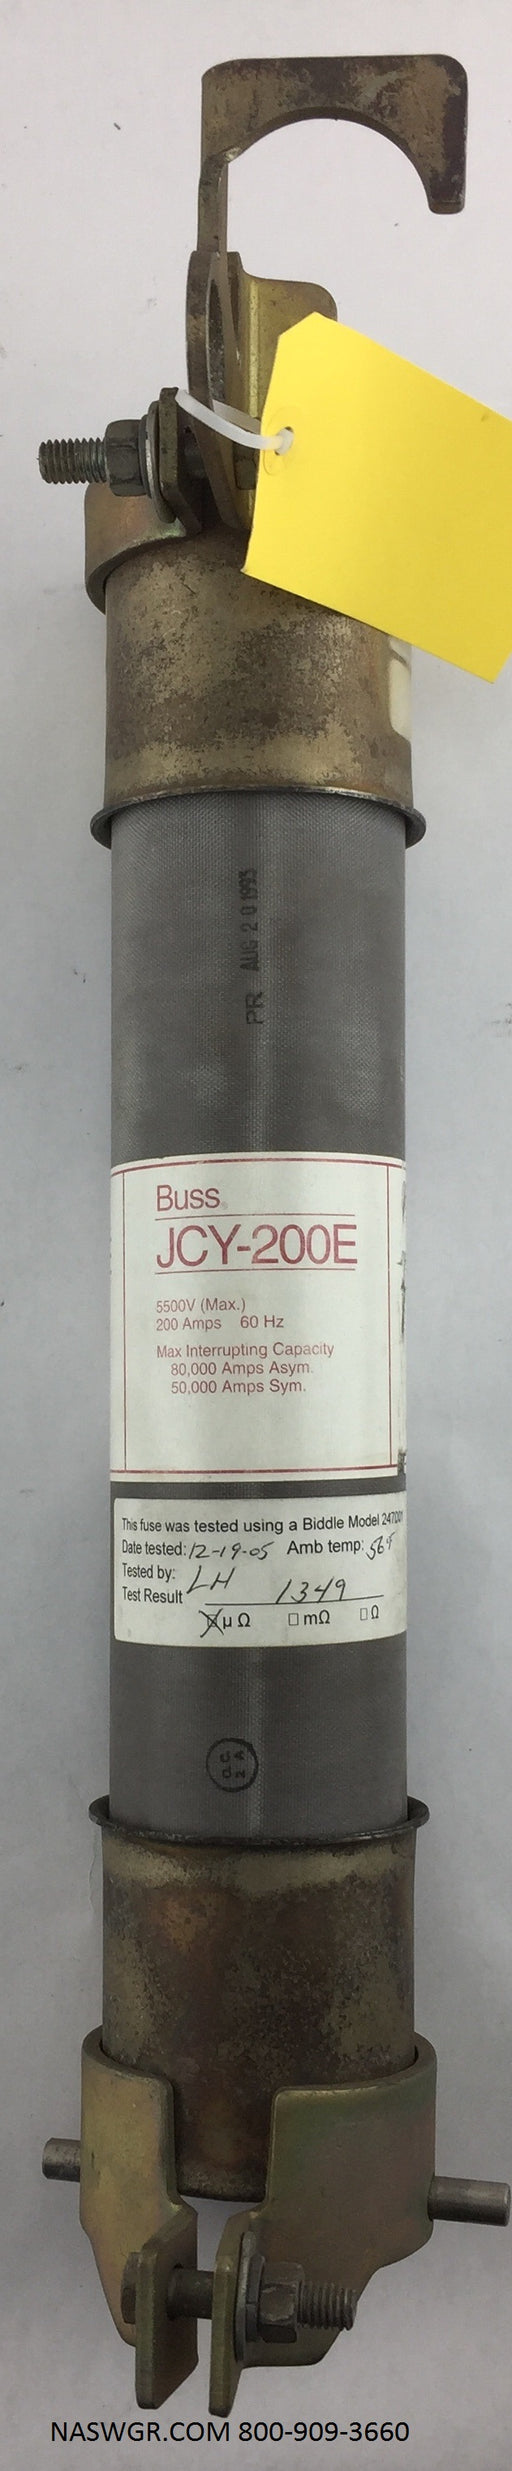 JCY-200E